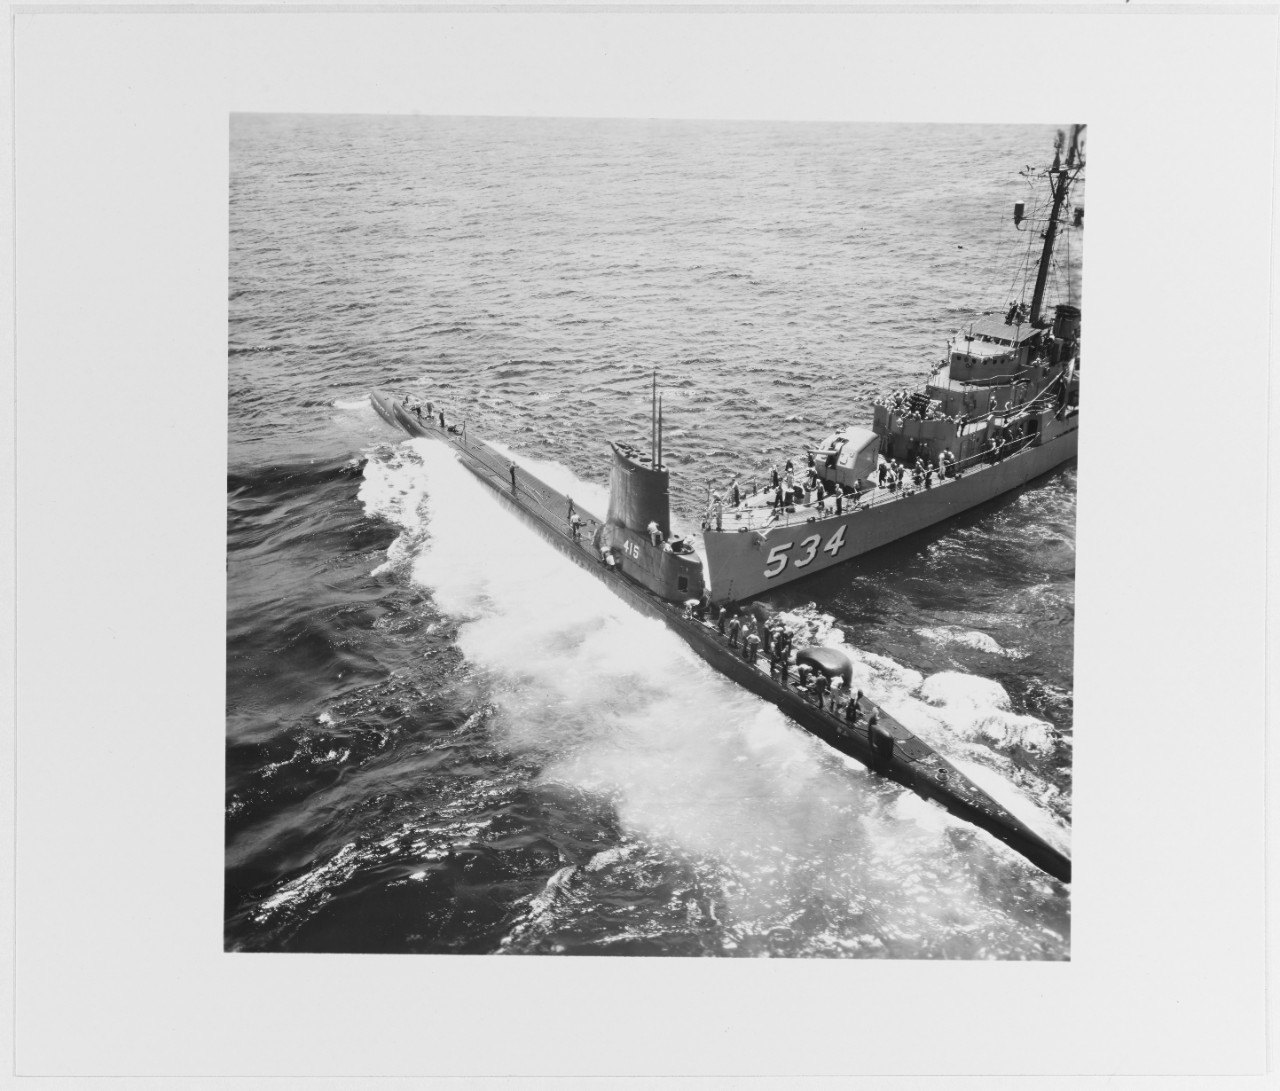 USS SILVERSTEIN (DE-534) and USS STICKLEBACK (SS-415)